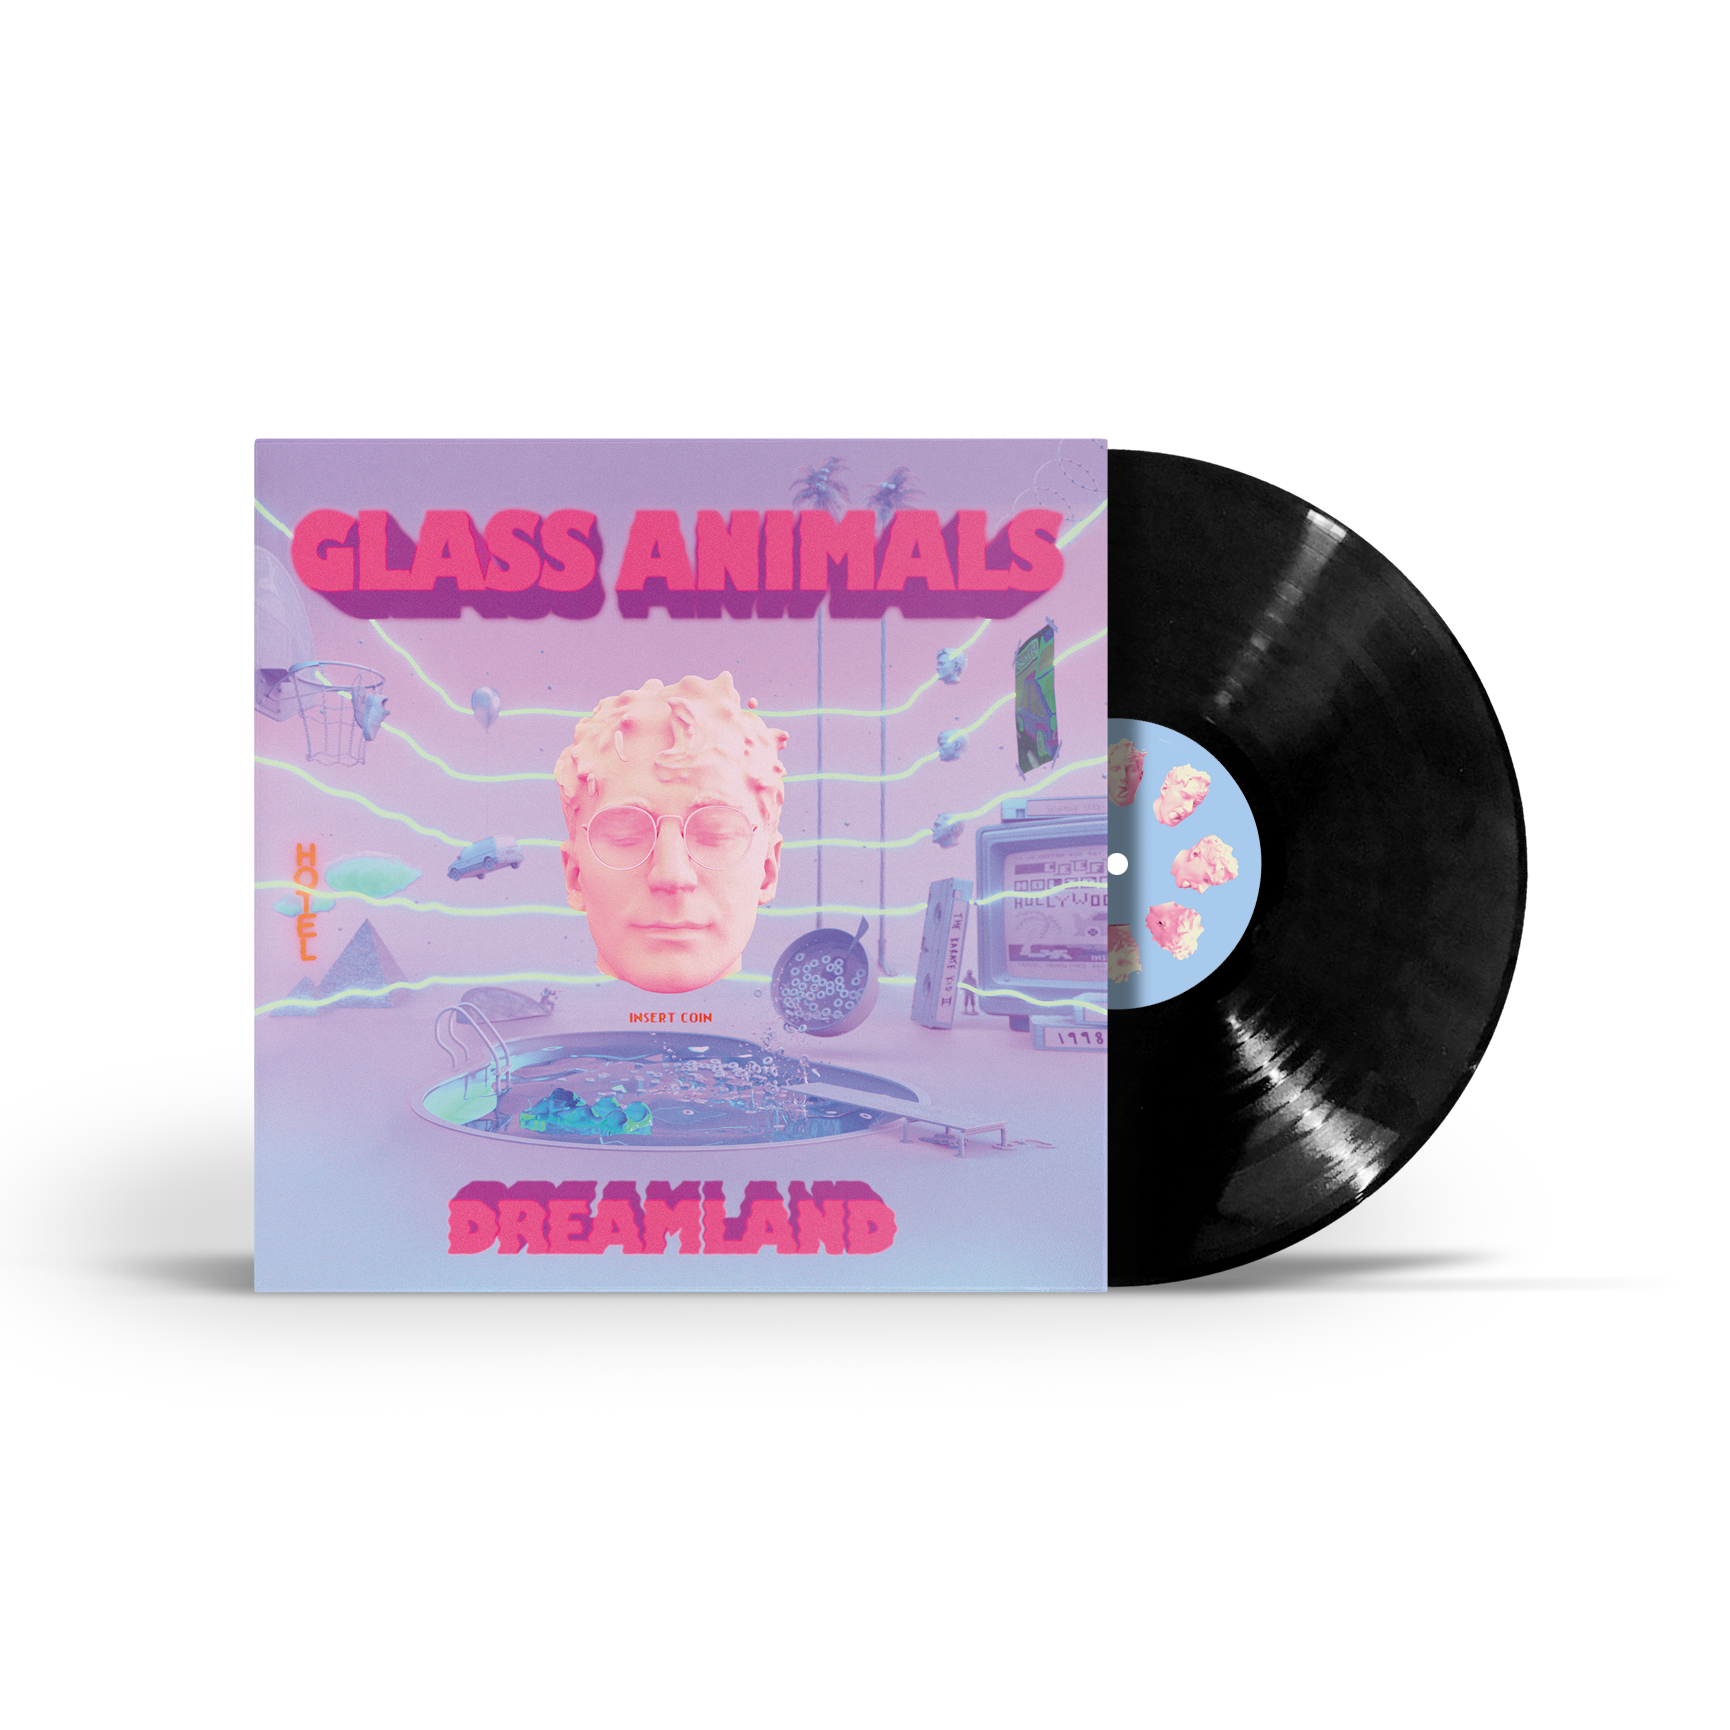 Glass Animals - Dreamland: Vinyl LP